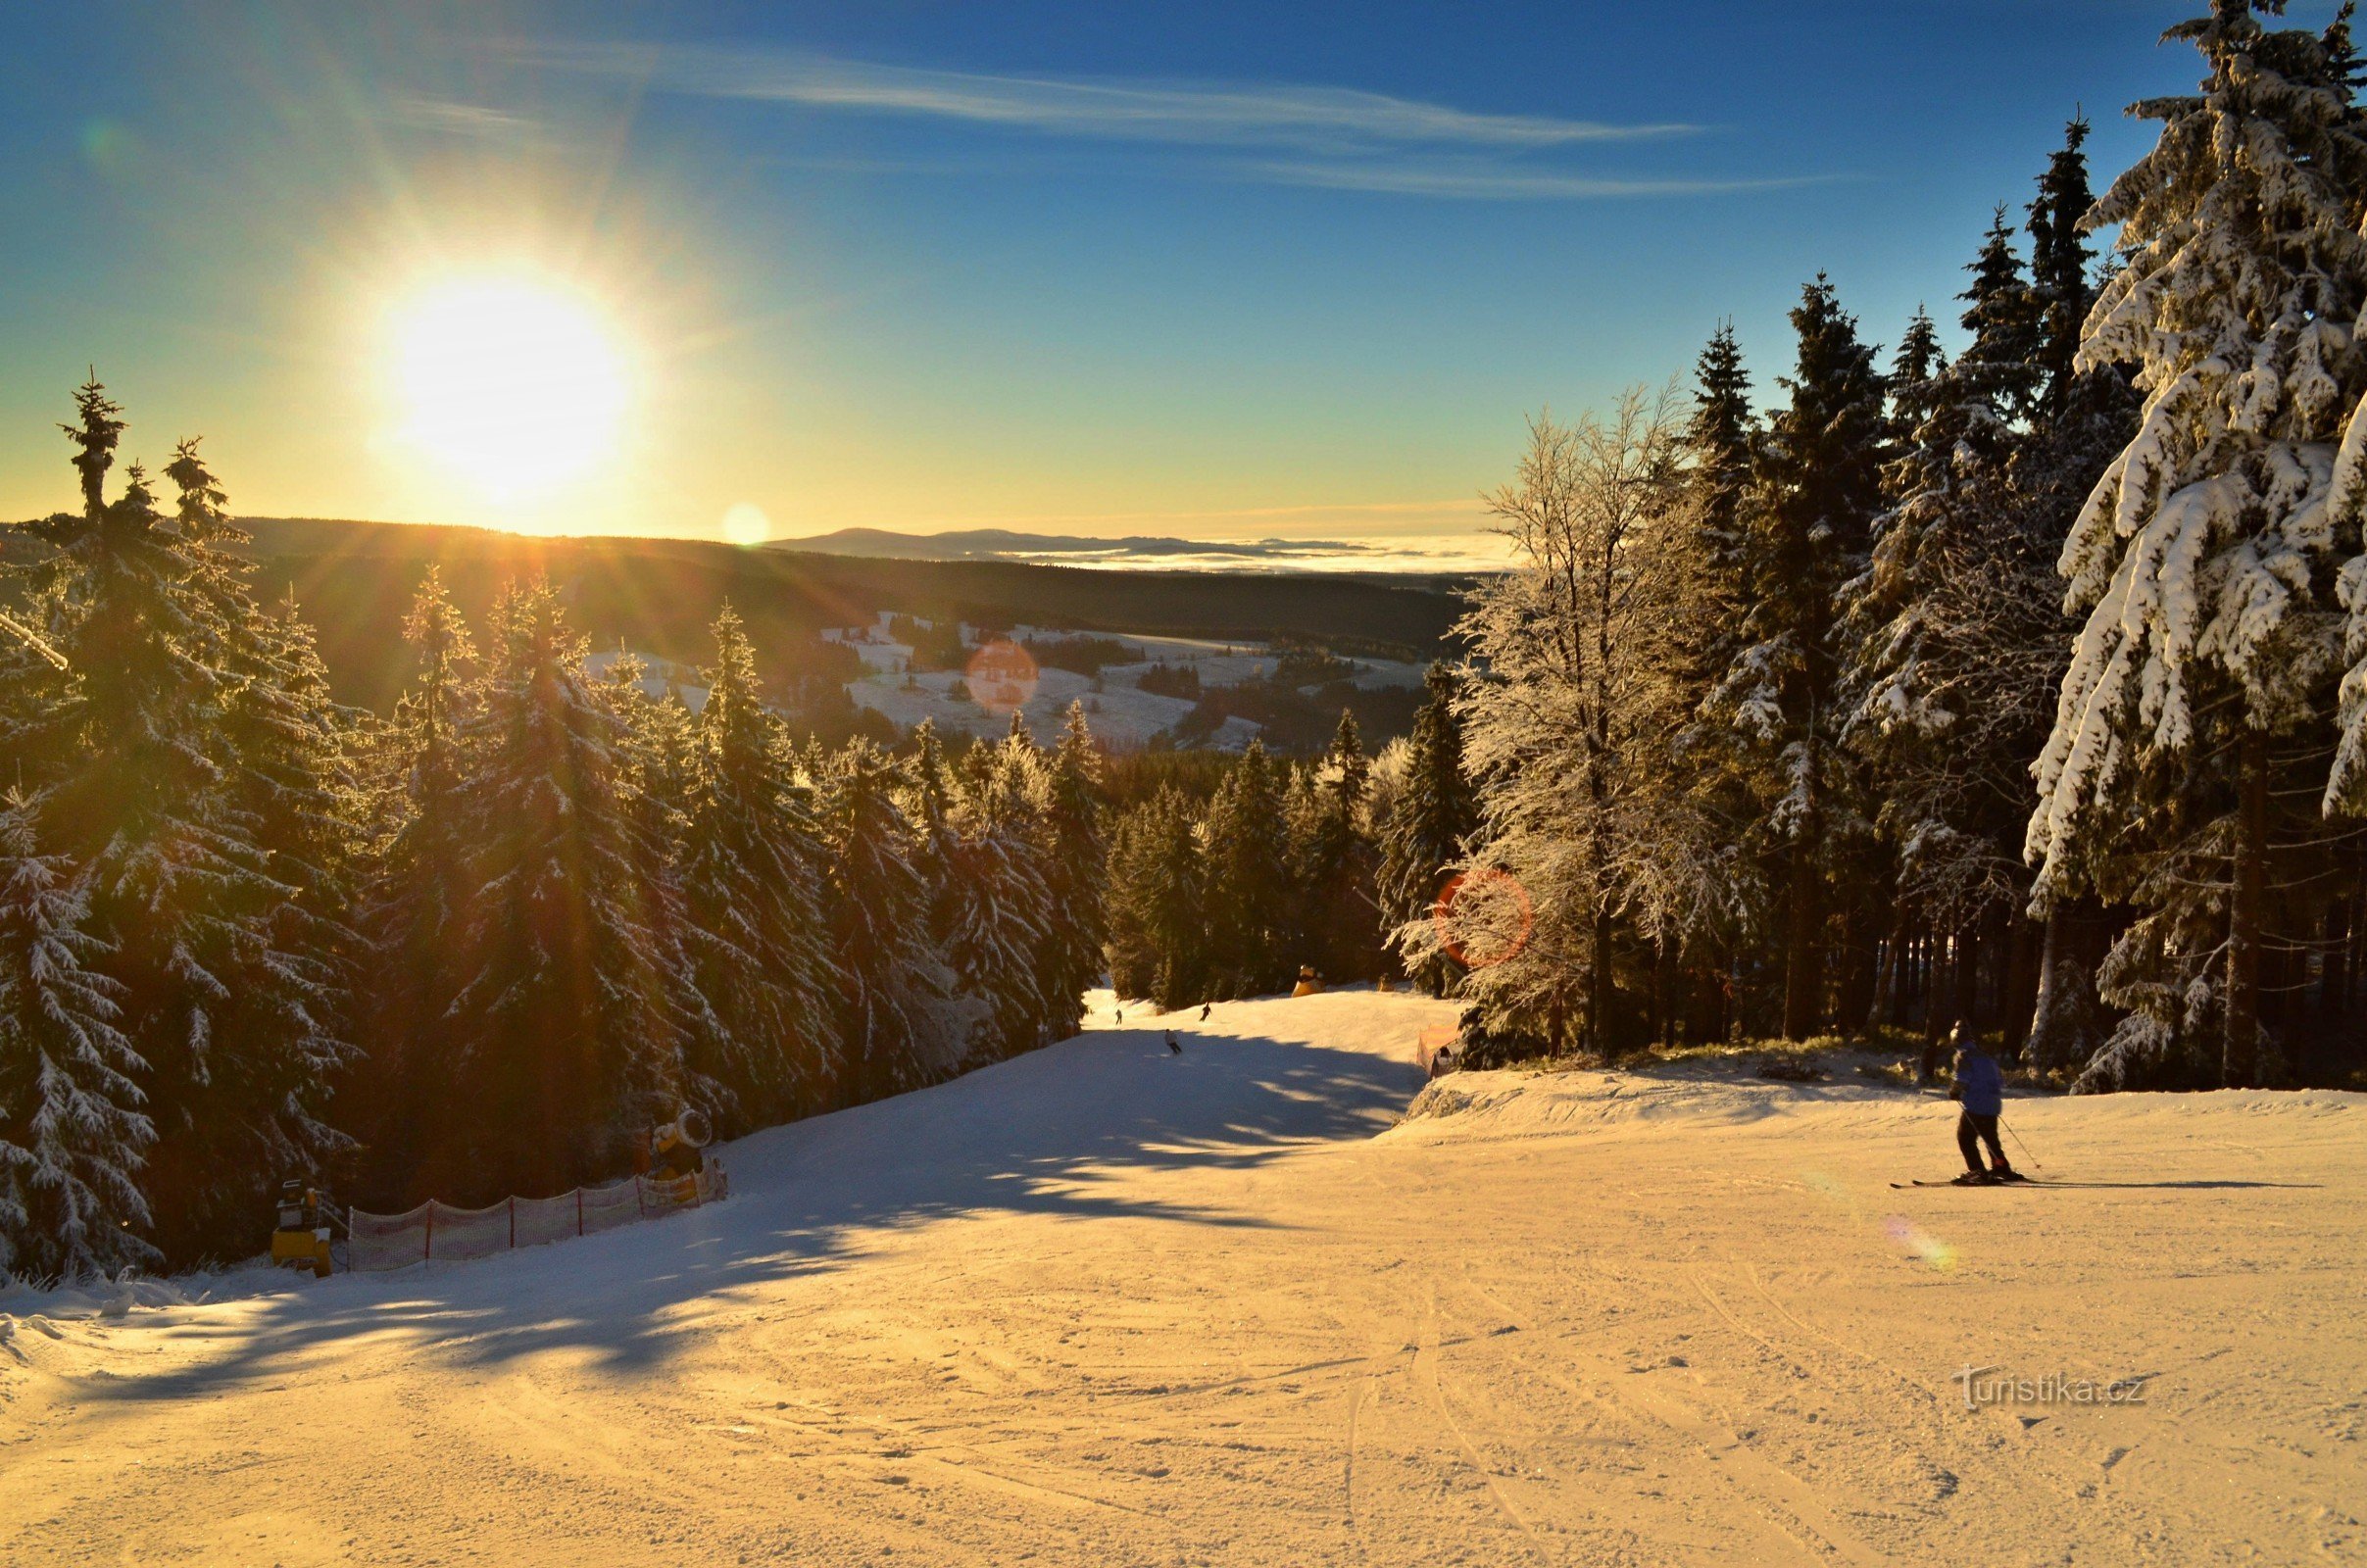 Skizentrum Říčky im Adlergebirge